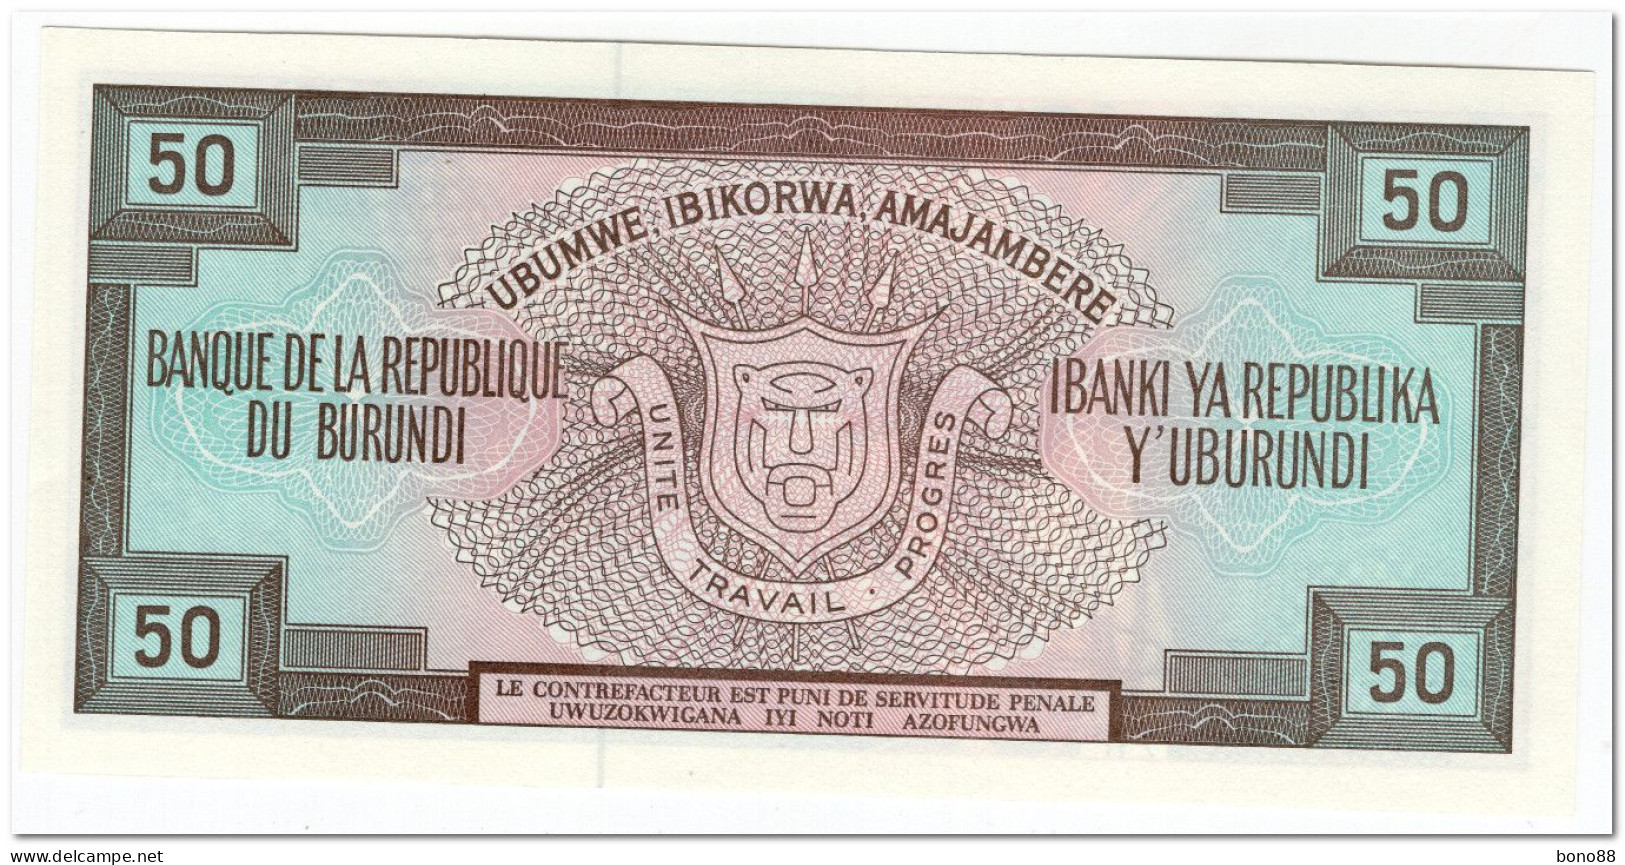 BURUNDI,50 FRANCS,1993,P.28c,UNC - Burundi